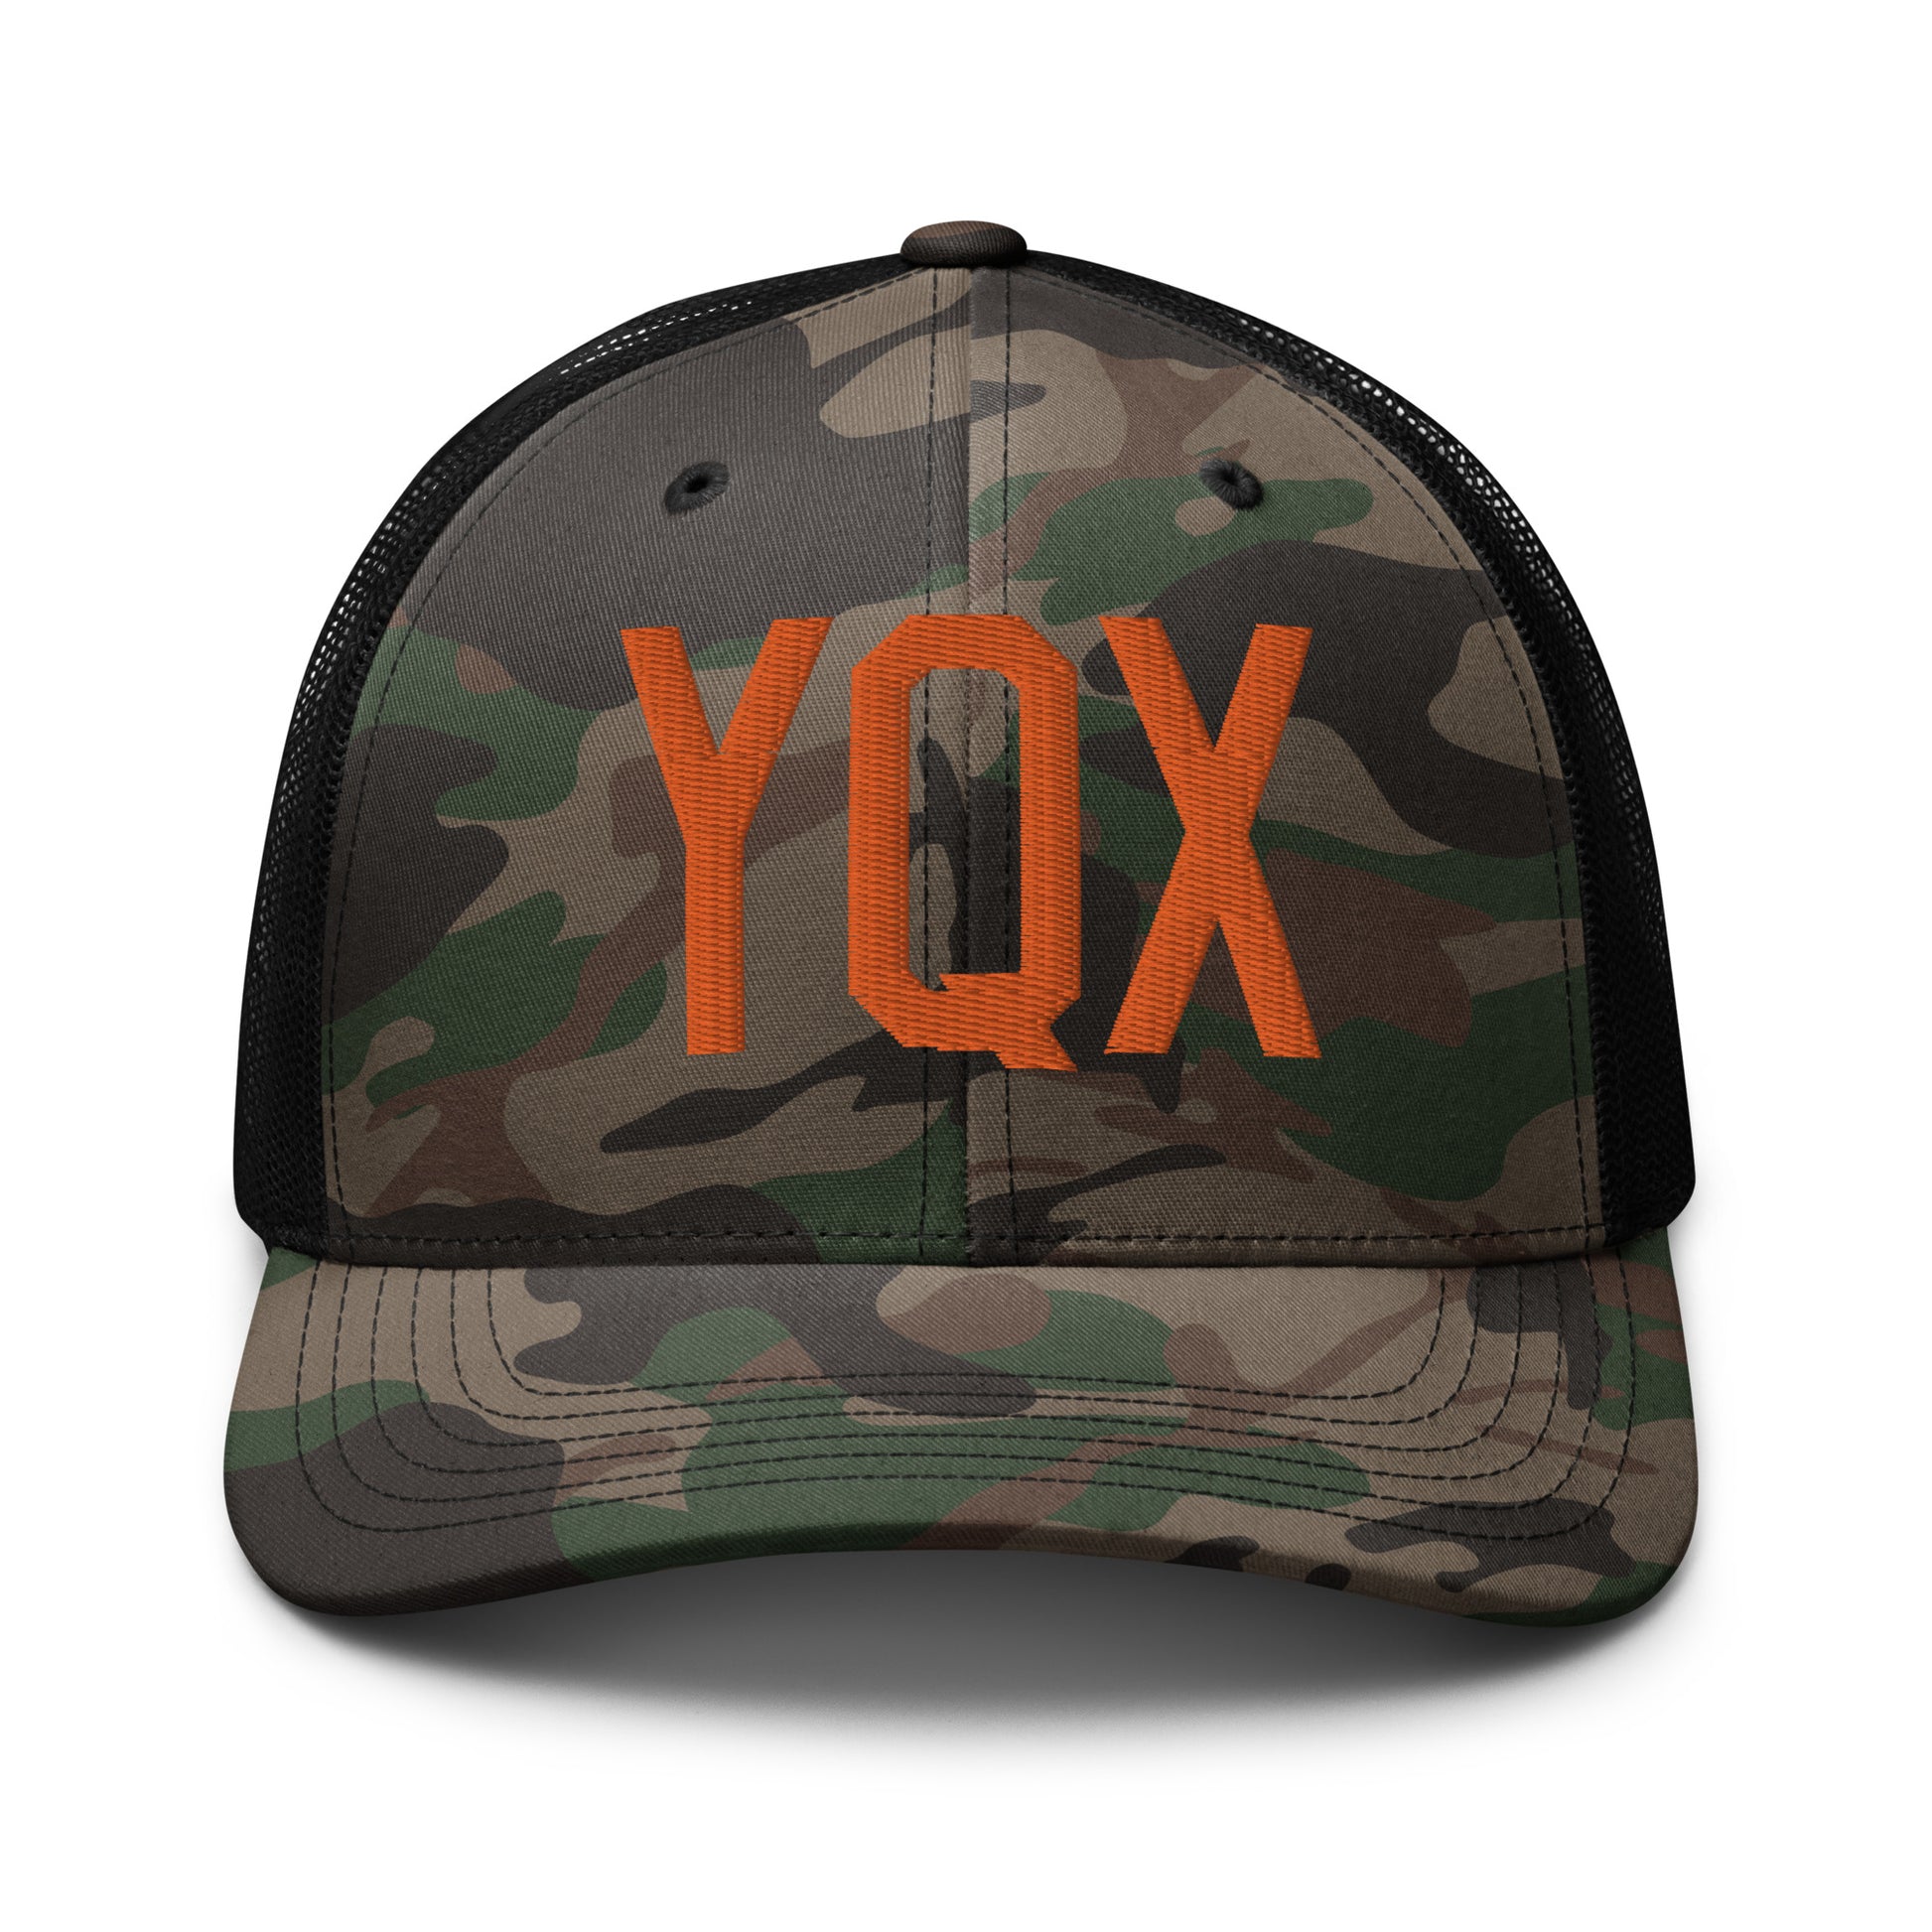 Airport Code Camouflage Trucker Hat - Orange • YQX Gander • YHM Designs - Image 10